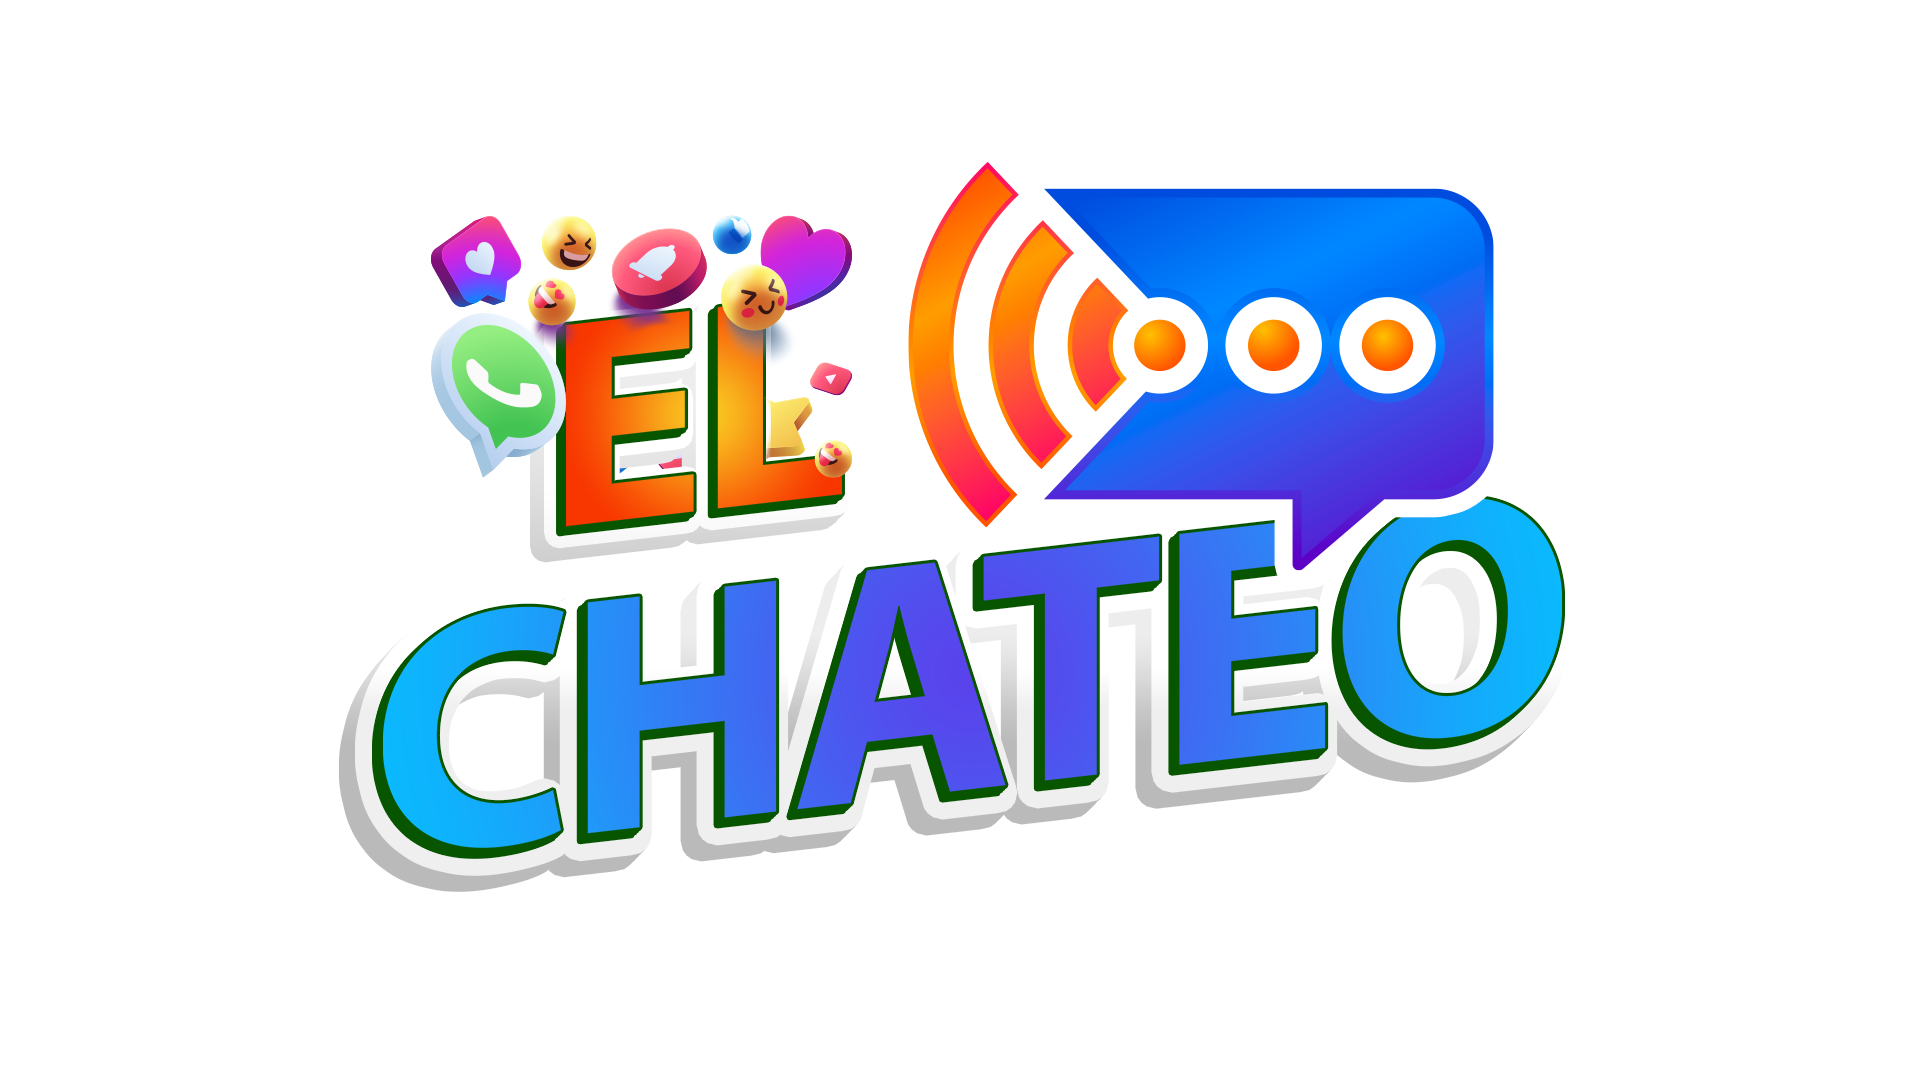 El Chateo